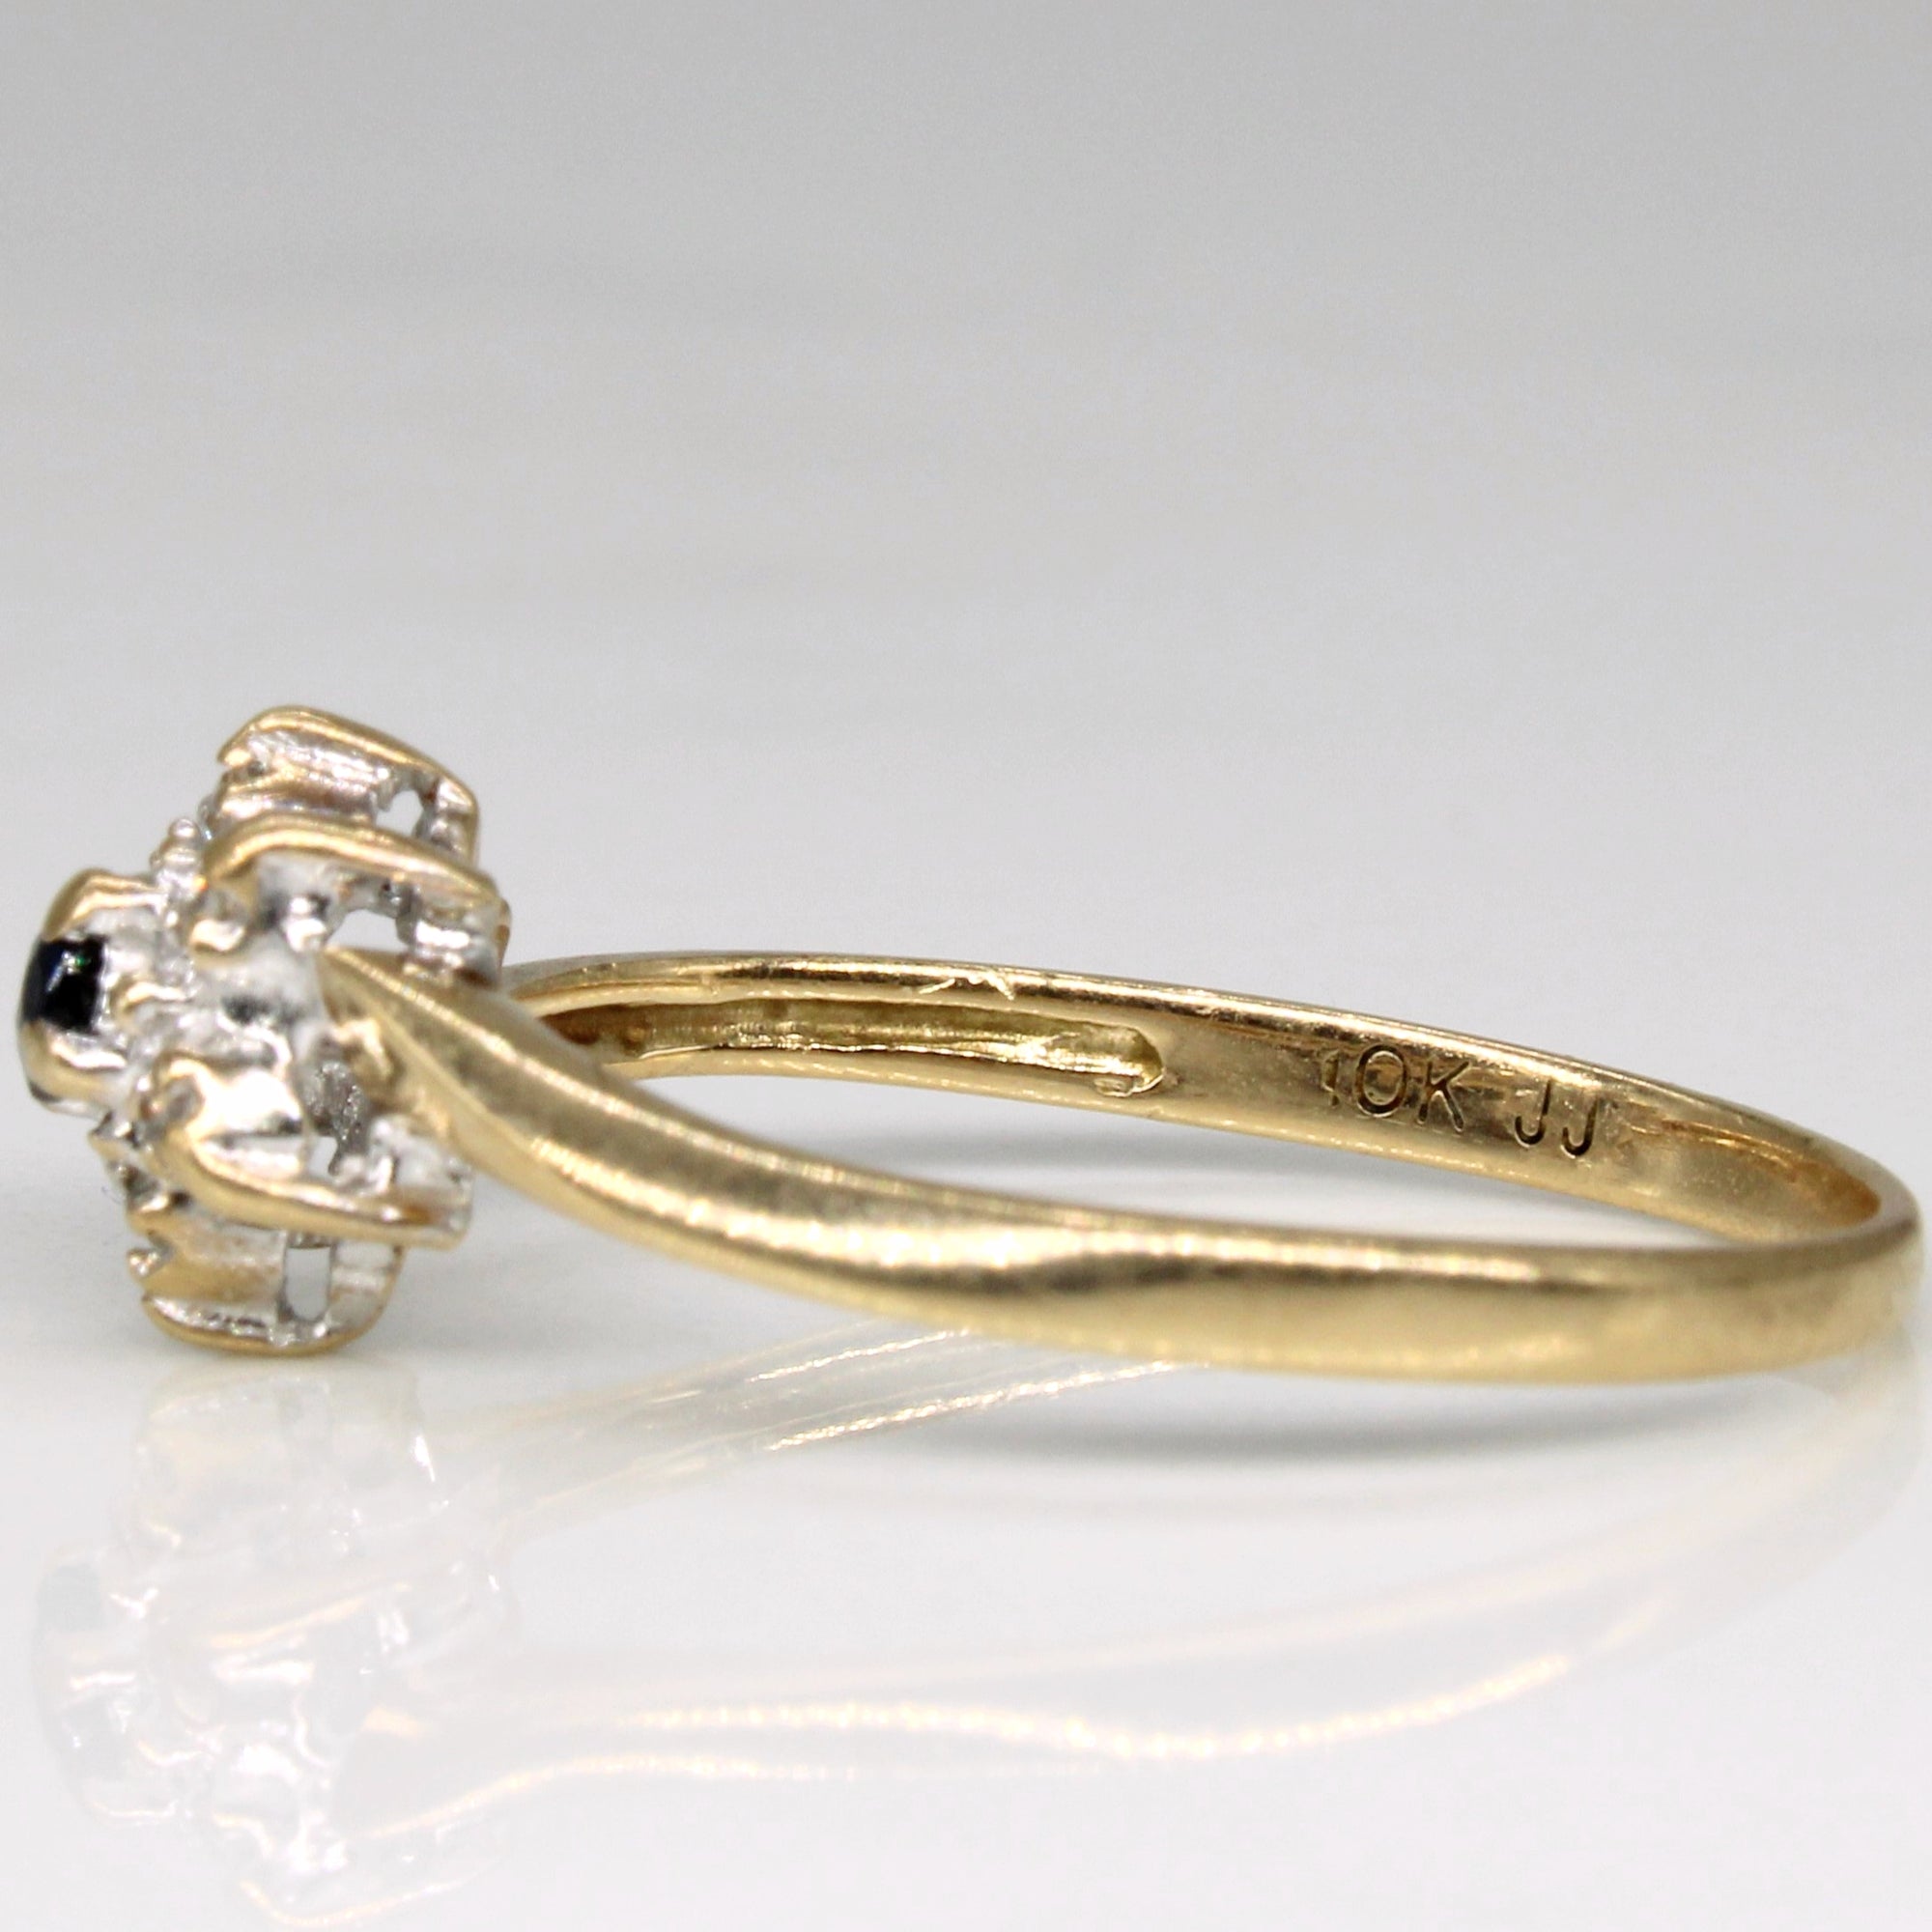 Sapphire & Diamond Ring | 0.08ct, 0.03ctw | SZ 5.75 |